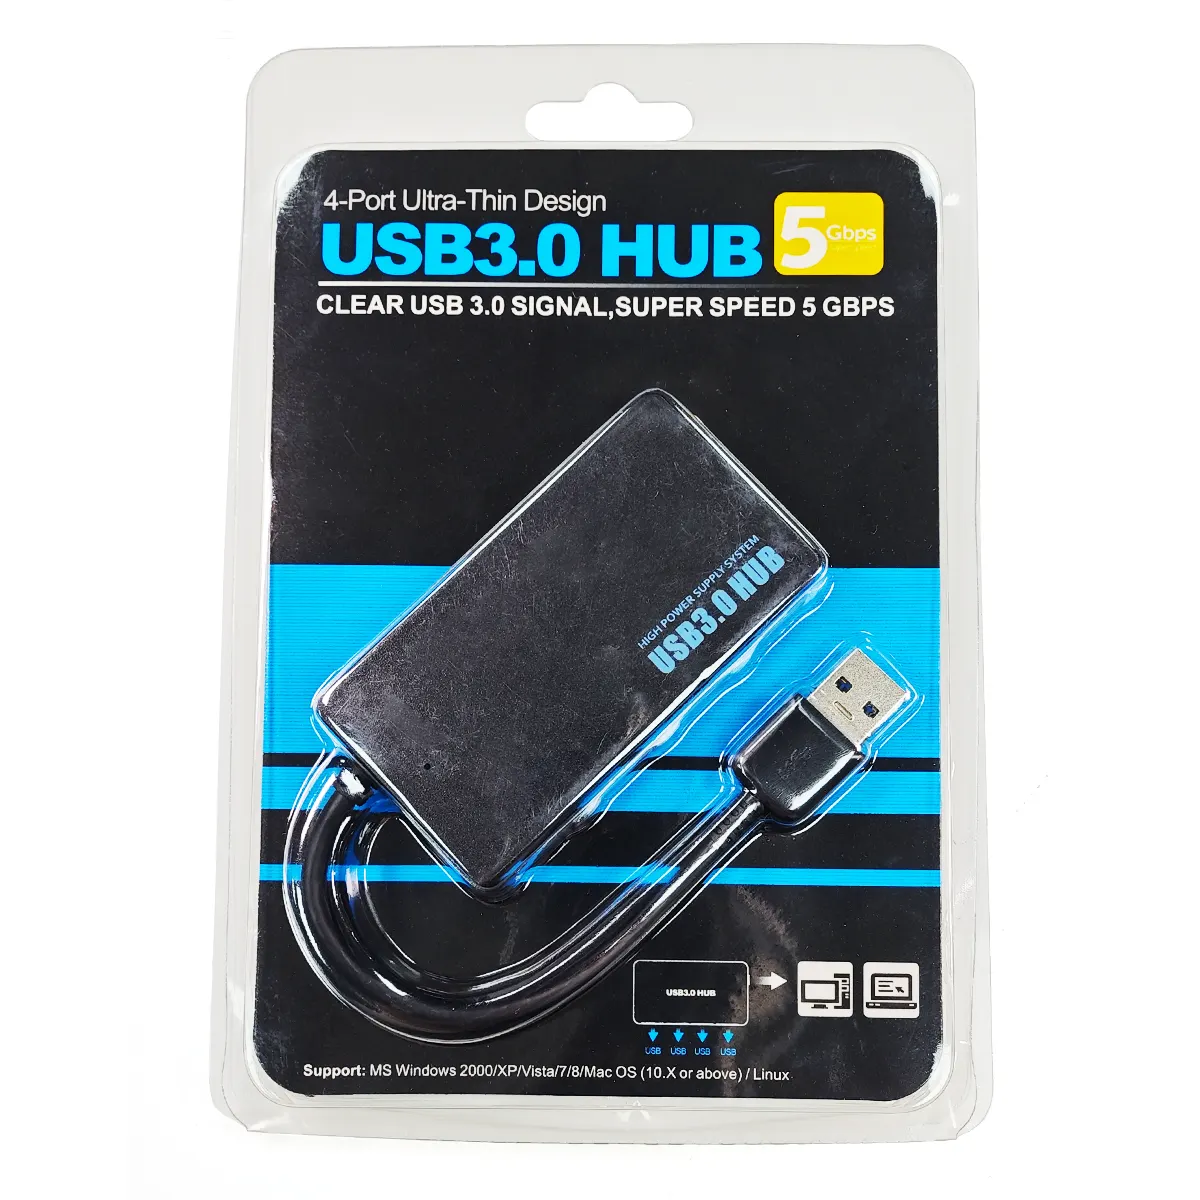 USBハブUSB3.0ハブ外部4ポートアダプタースプリッターUSBエキスパンダープラグアンドプレイ (ラップトップPCコンピューターアクセサリー用)